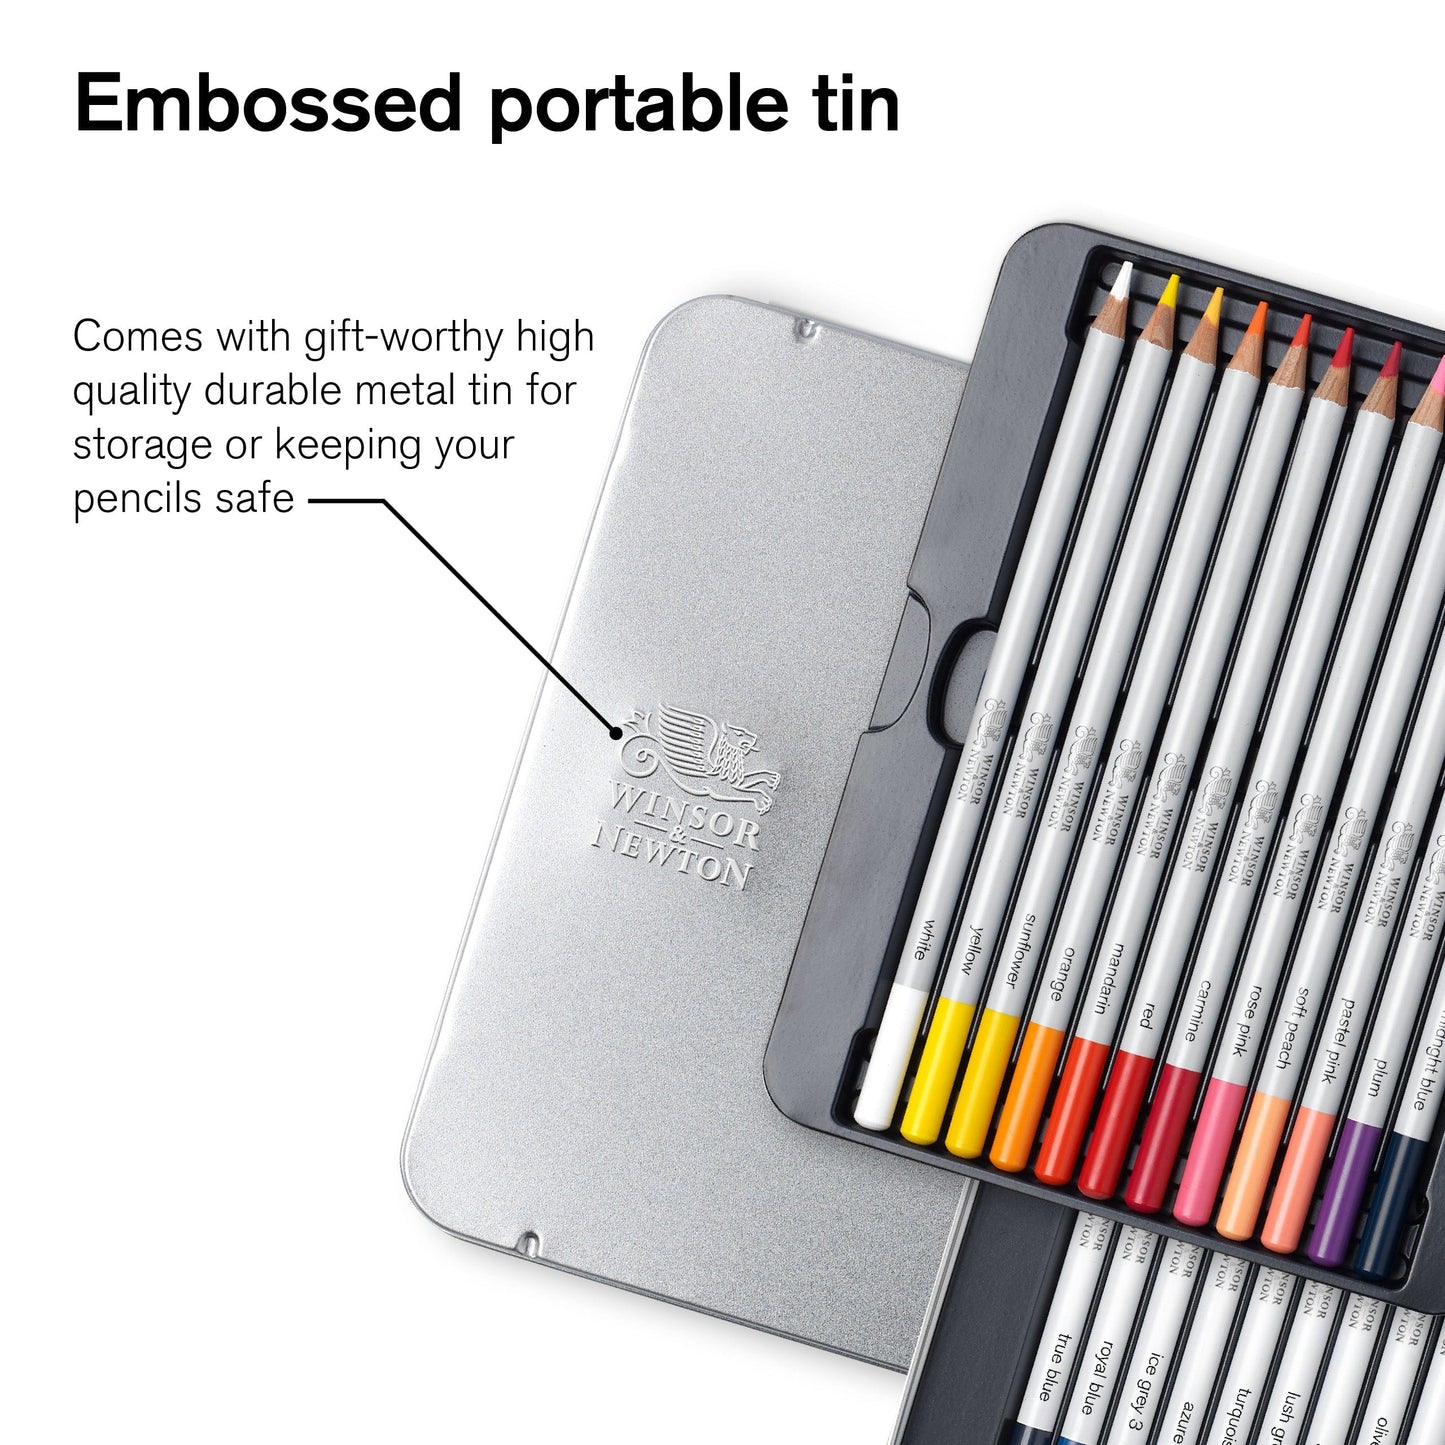 Winsor & Newton Colour Pencil Set Winsor & Newton - Colour Pencils - Soft Thick-Core - 24 Colour Set - Item #0490013